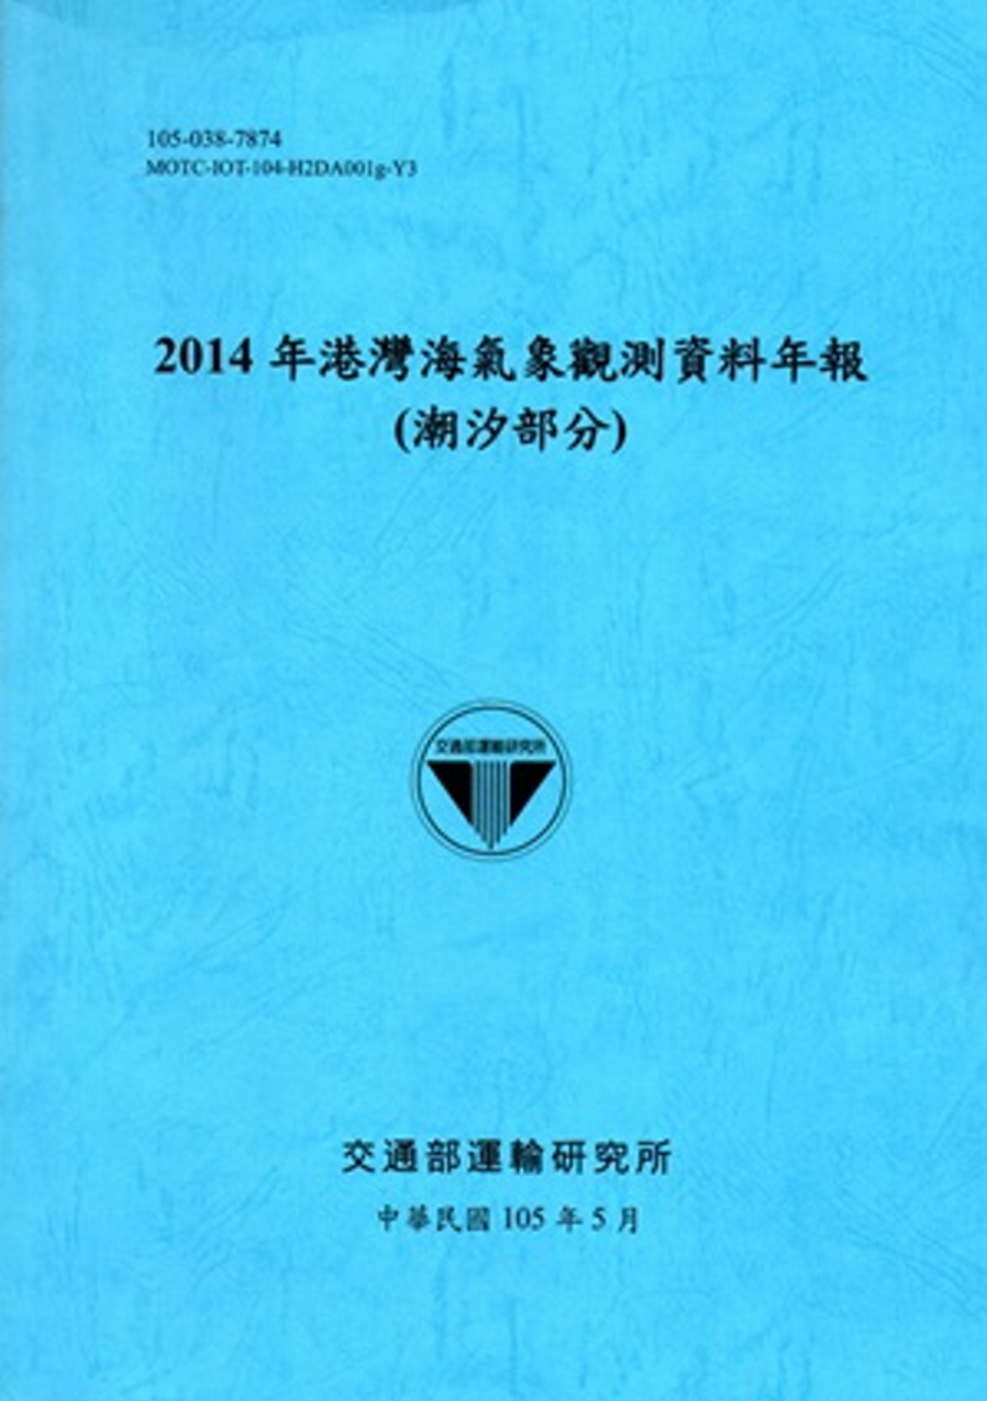 2014年港灣海氣象觀測資料年報(潮汐部分)[105藍]